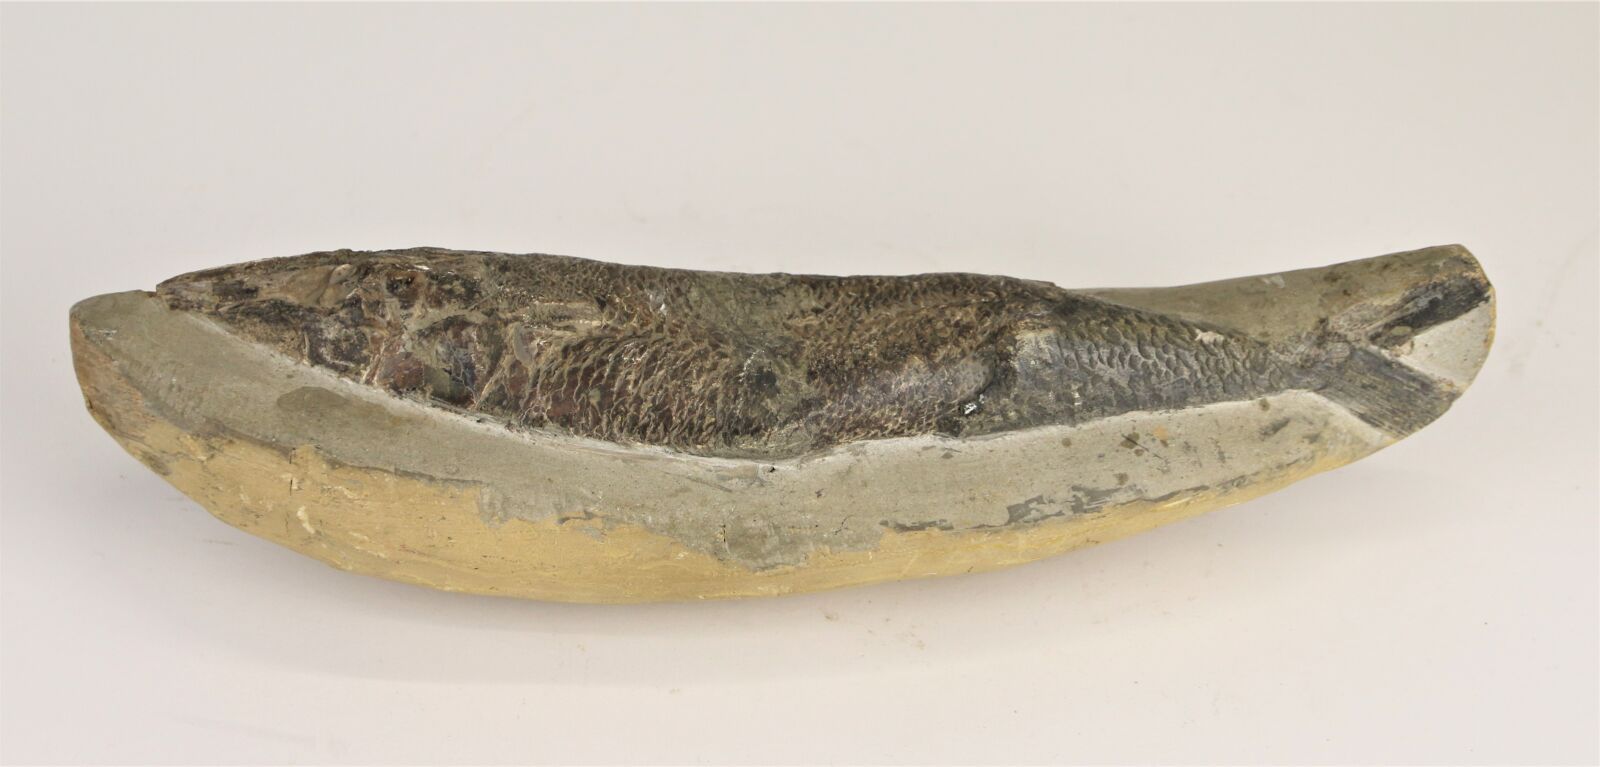 Null Fossil eines Fisches.
Länge: 30 cm